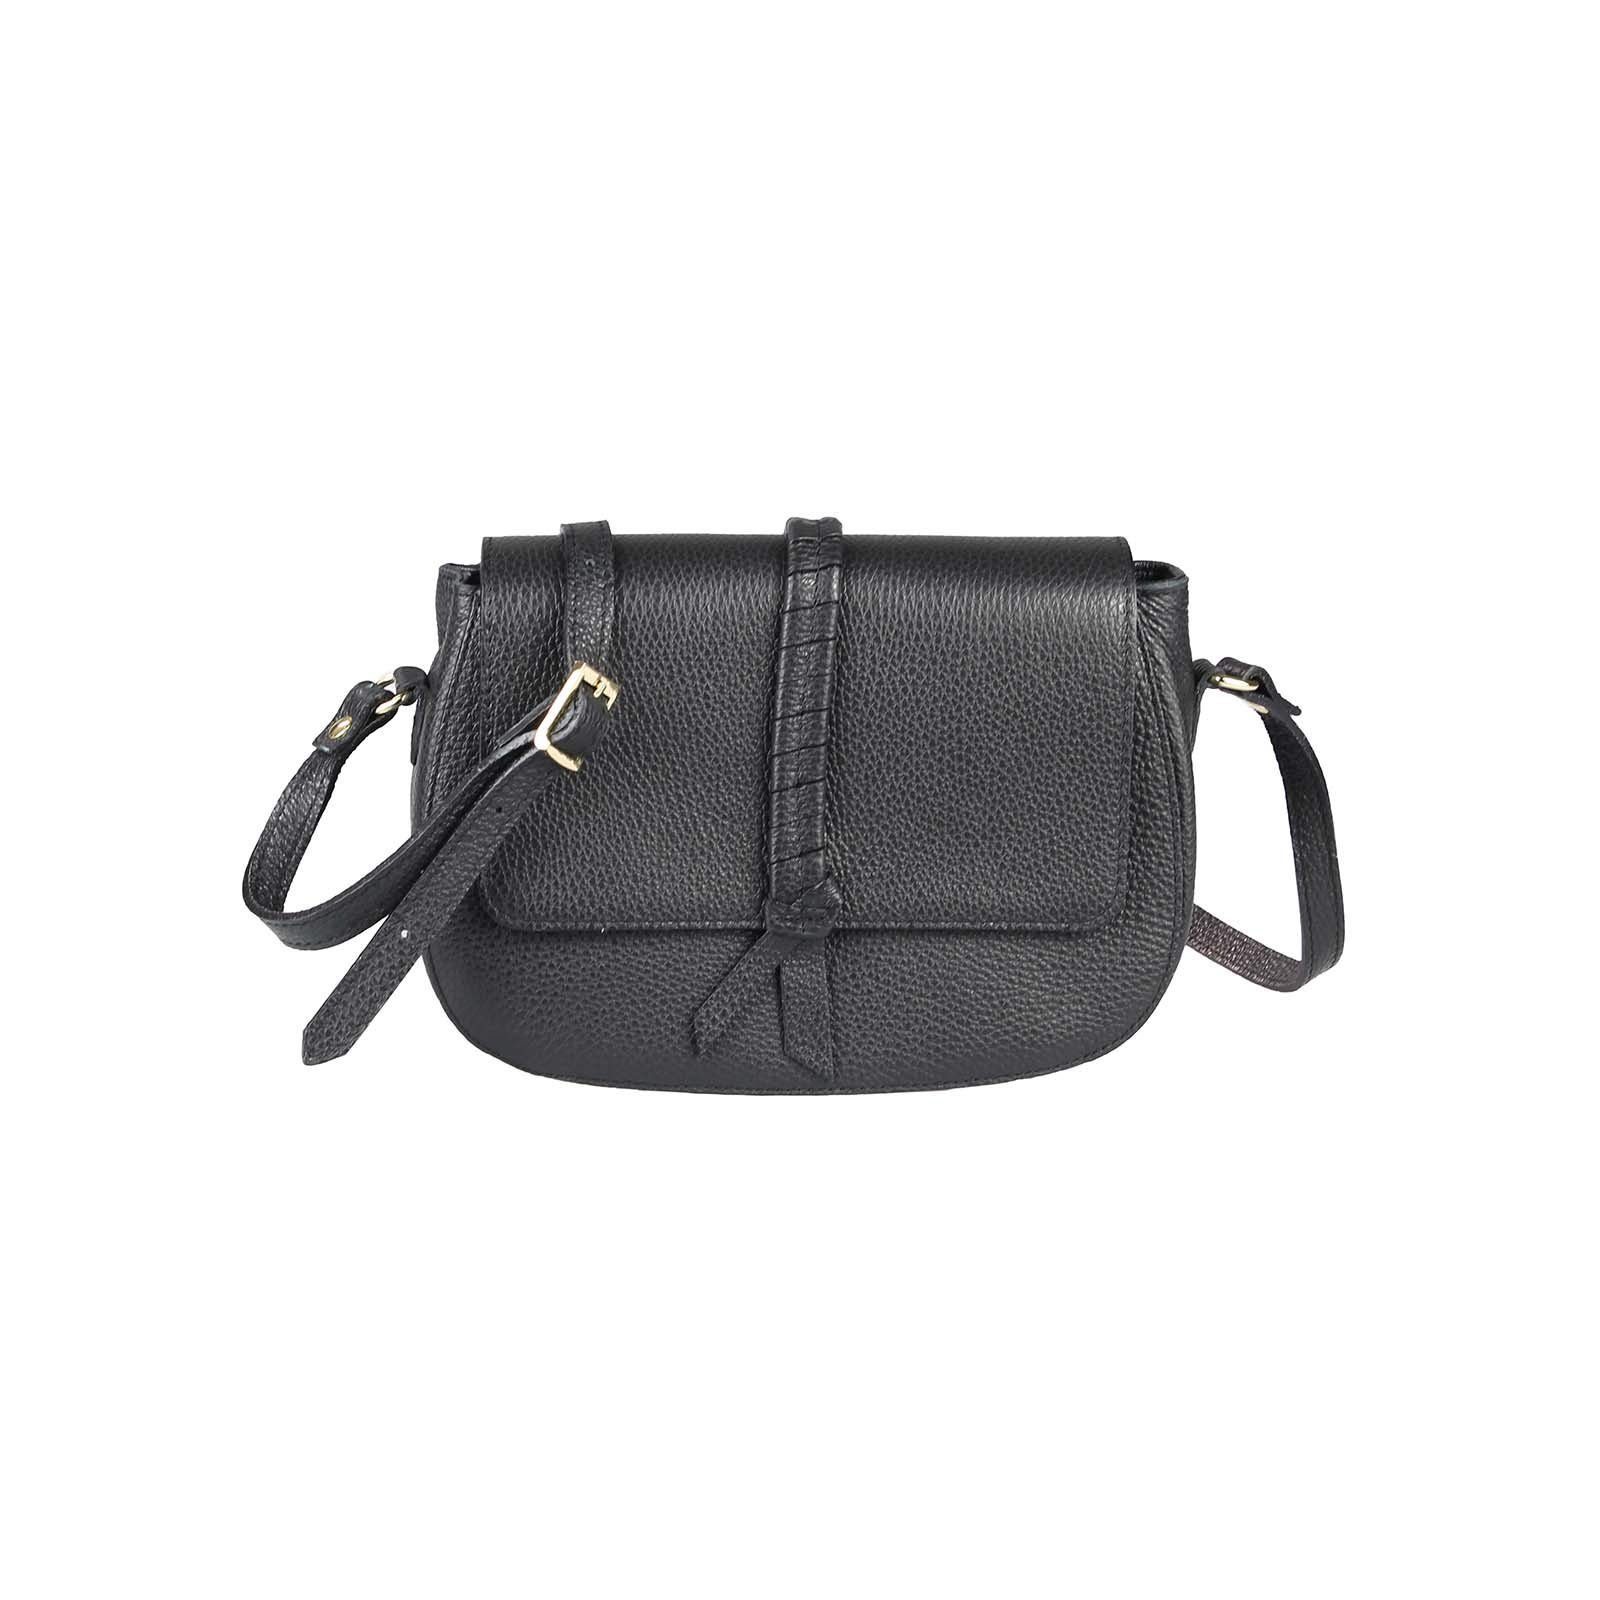 Damen Handtaschen ITALYSHOP24 Schultertasche Made in Italy Damen Leder Tasche CrossOver, als Handtasche, Umhängetasche, Shopper 